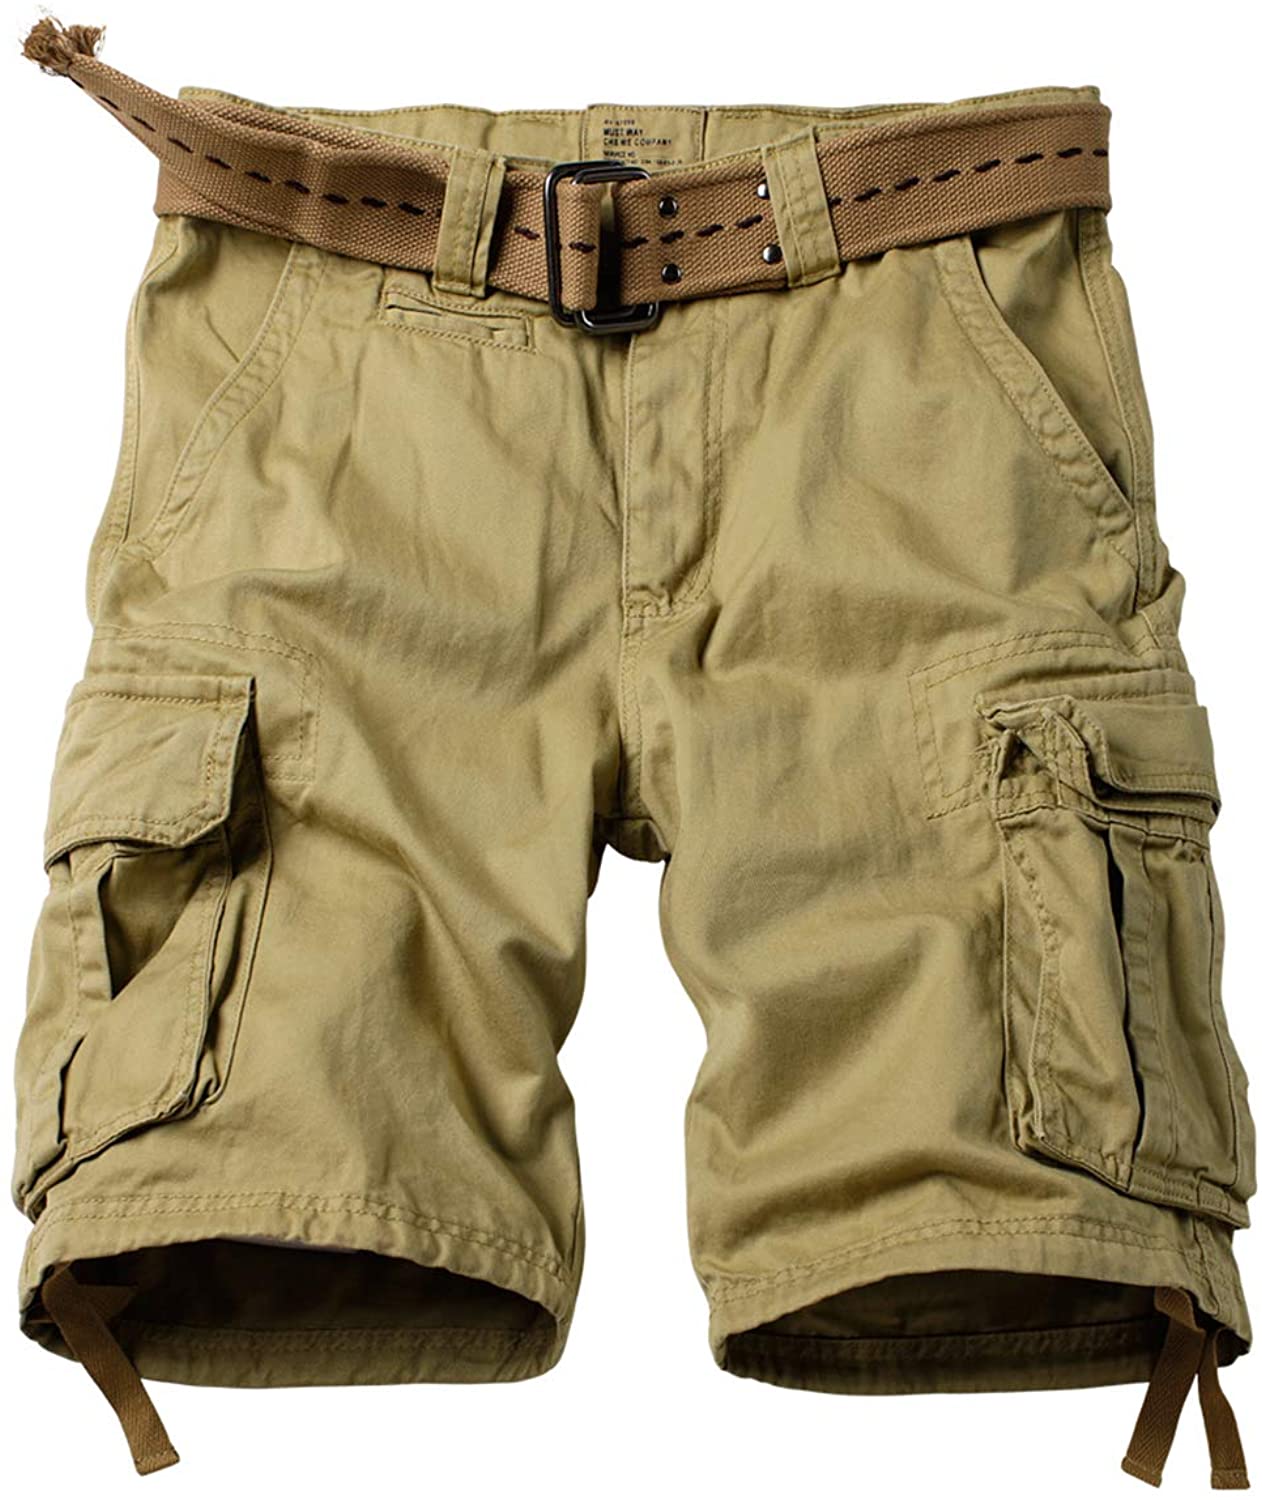 AKARMY Men's Camo Cargo Shorts Outdoor Multi-Pocket Cotton Casual Shorts